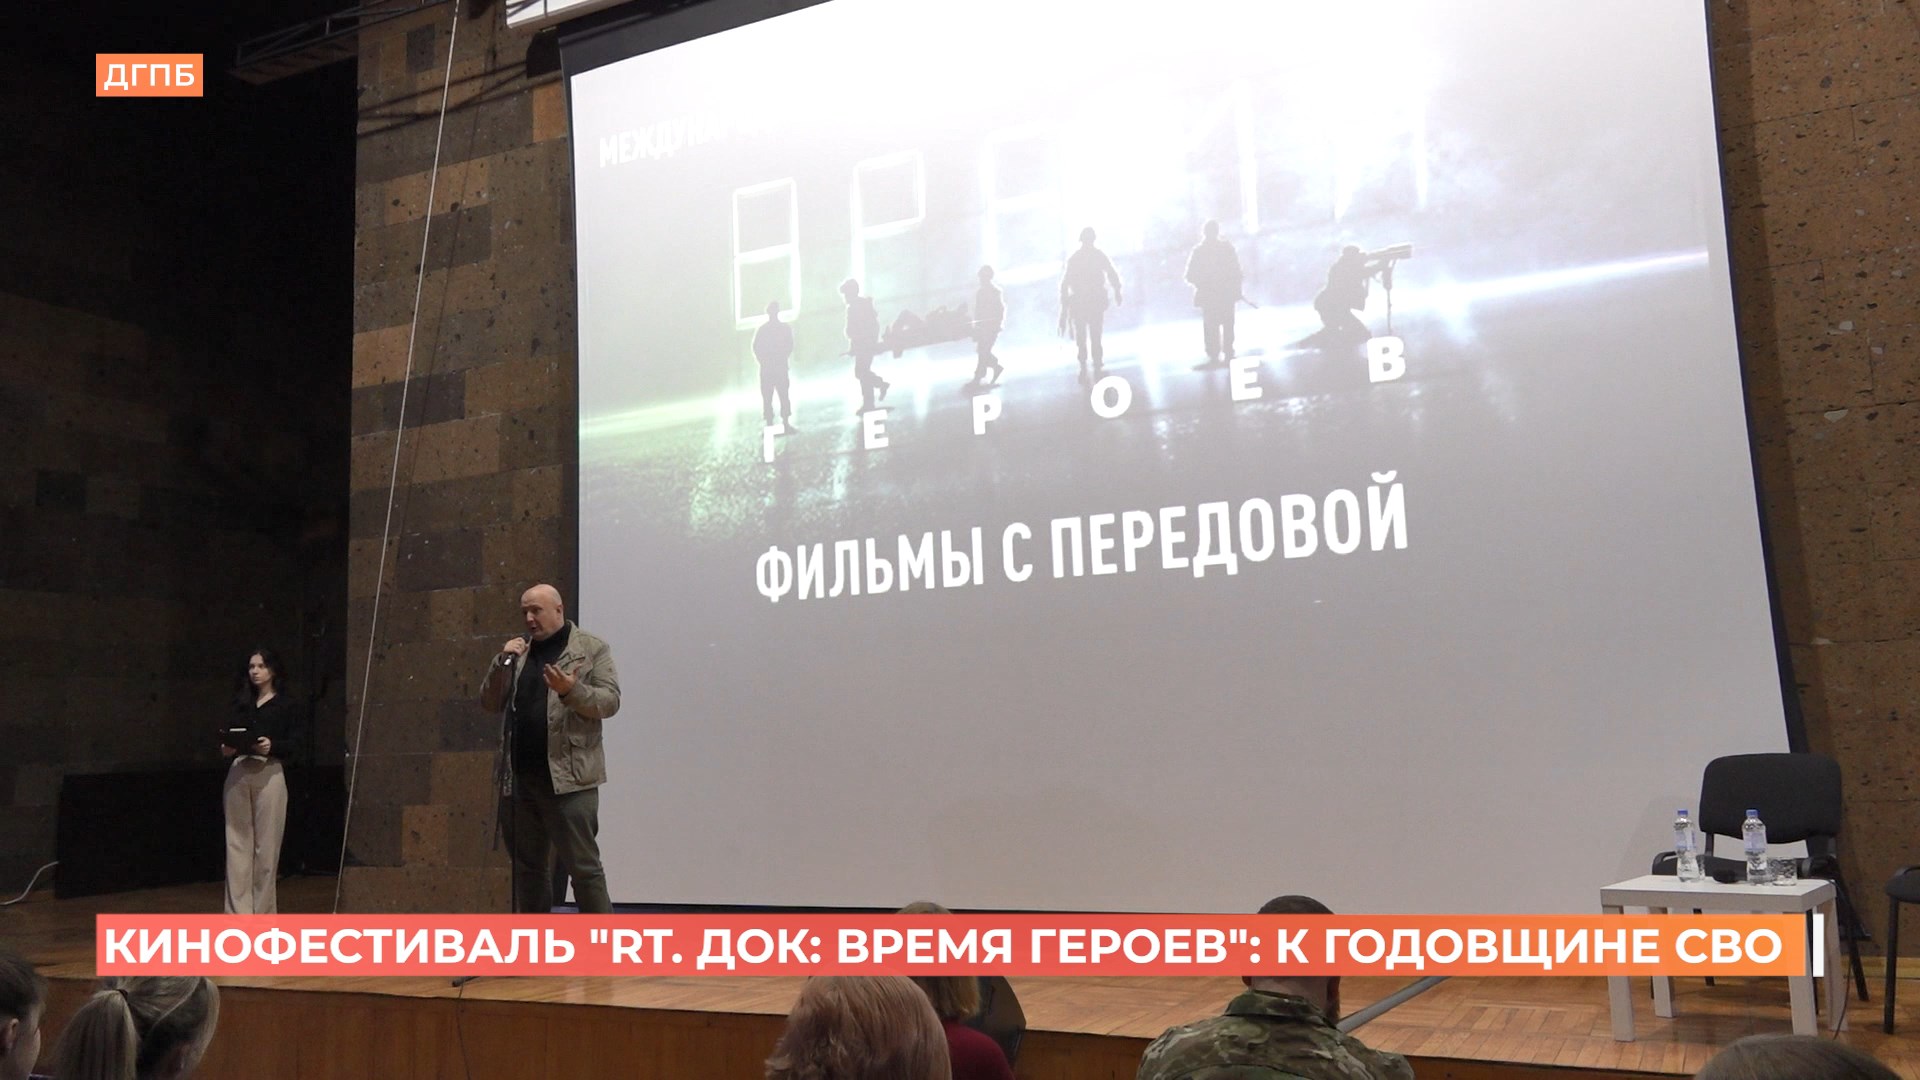 Кинофестиваль «RT Док: Время героев» открыли к годовщине СВО  в Донской публичной библиотеке